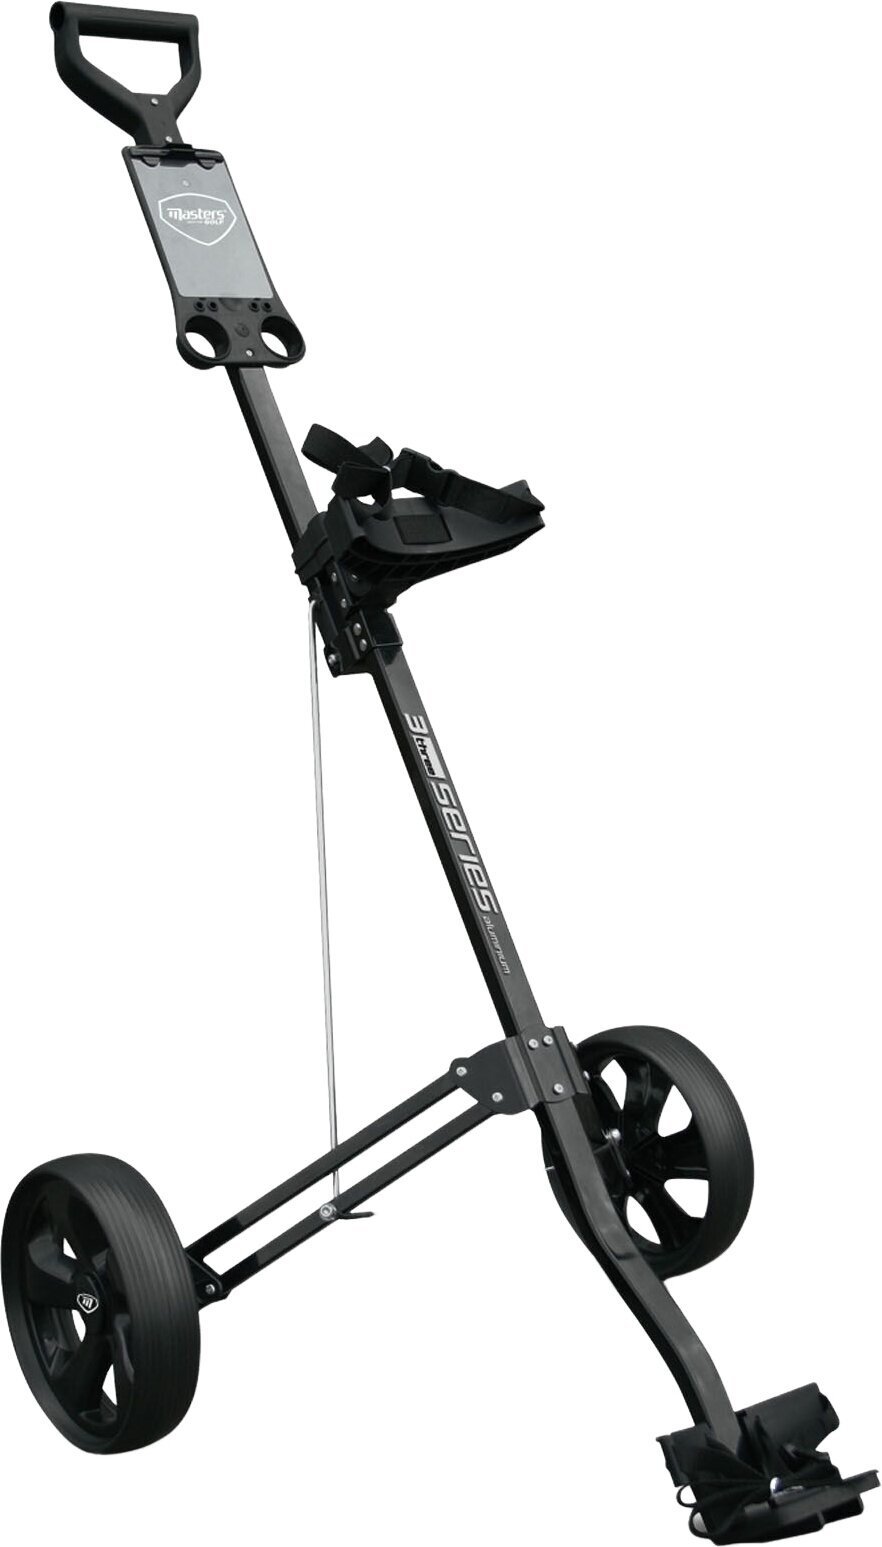 Χειροκίνητο Καροτσάκι Γκολφ Masters Golf 3 Series Aluminium 2 Wheel Pull Trolley Black Χειροκίνητο Καροτσάκι Γκολφ